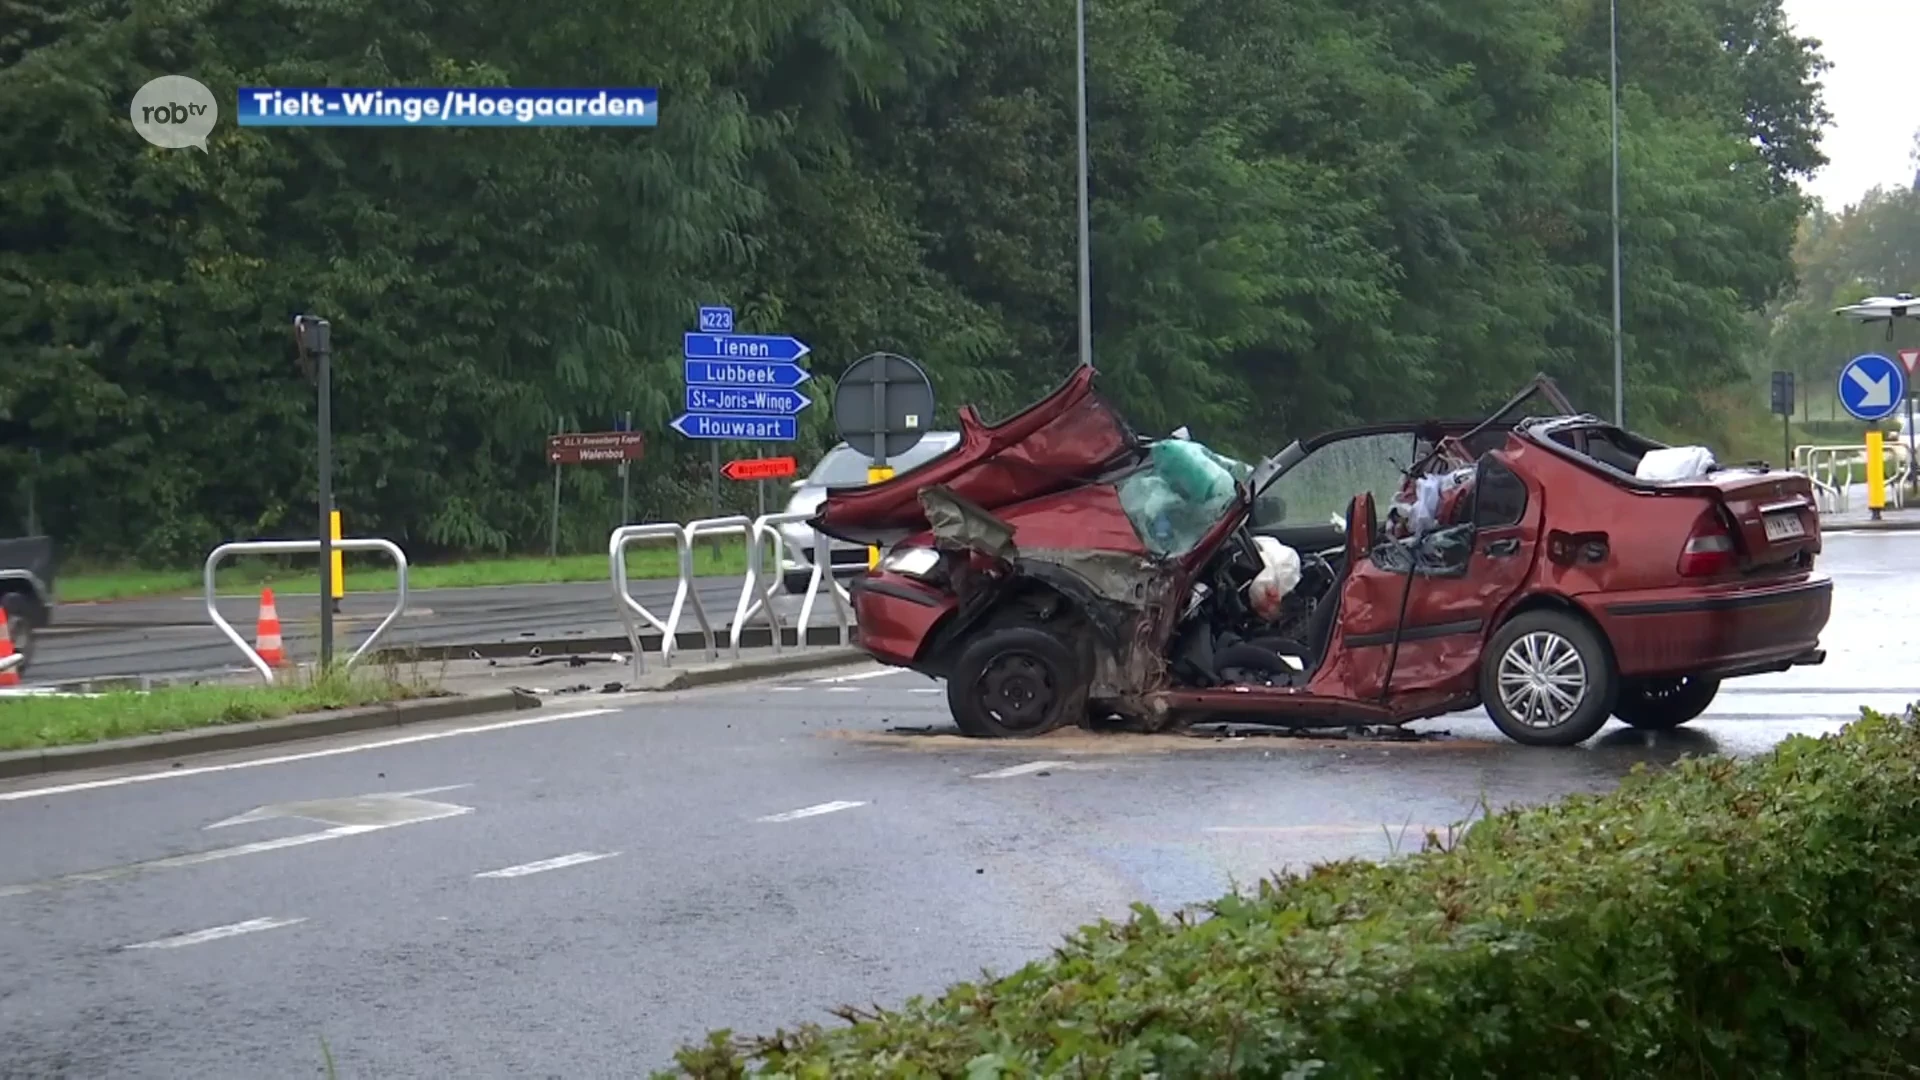 Vrouw van 27 overleden na zwaar ongeval in Tielt-Winge vorige week dinsdag